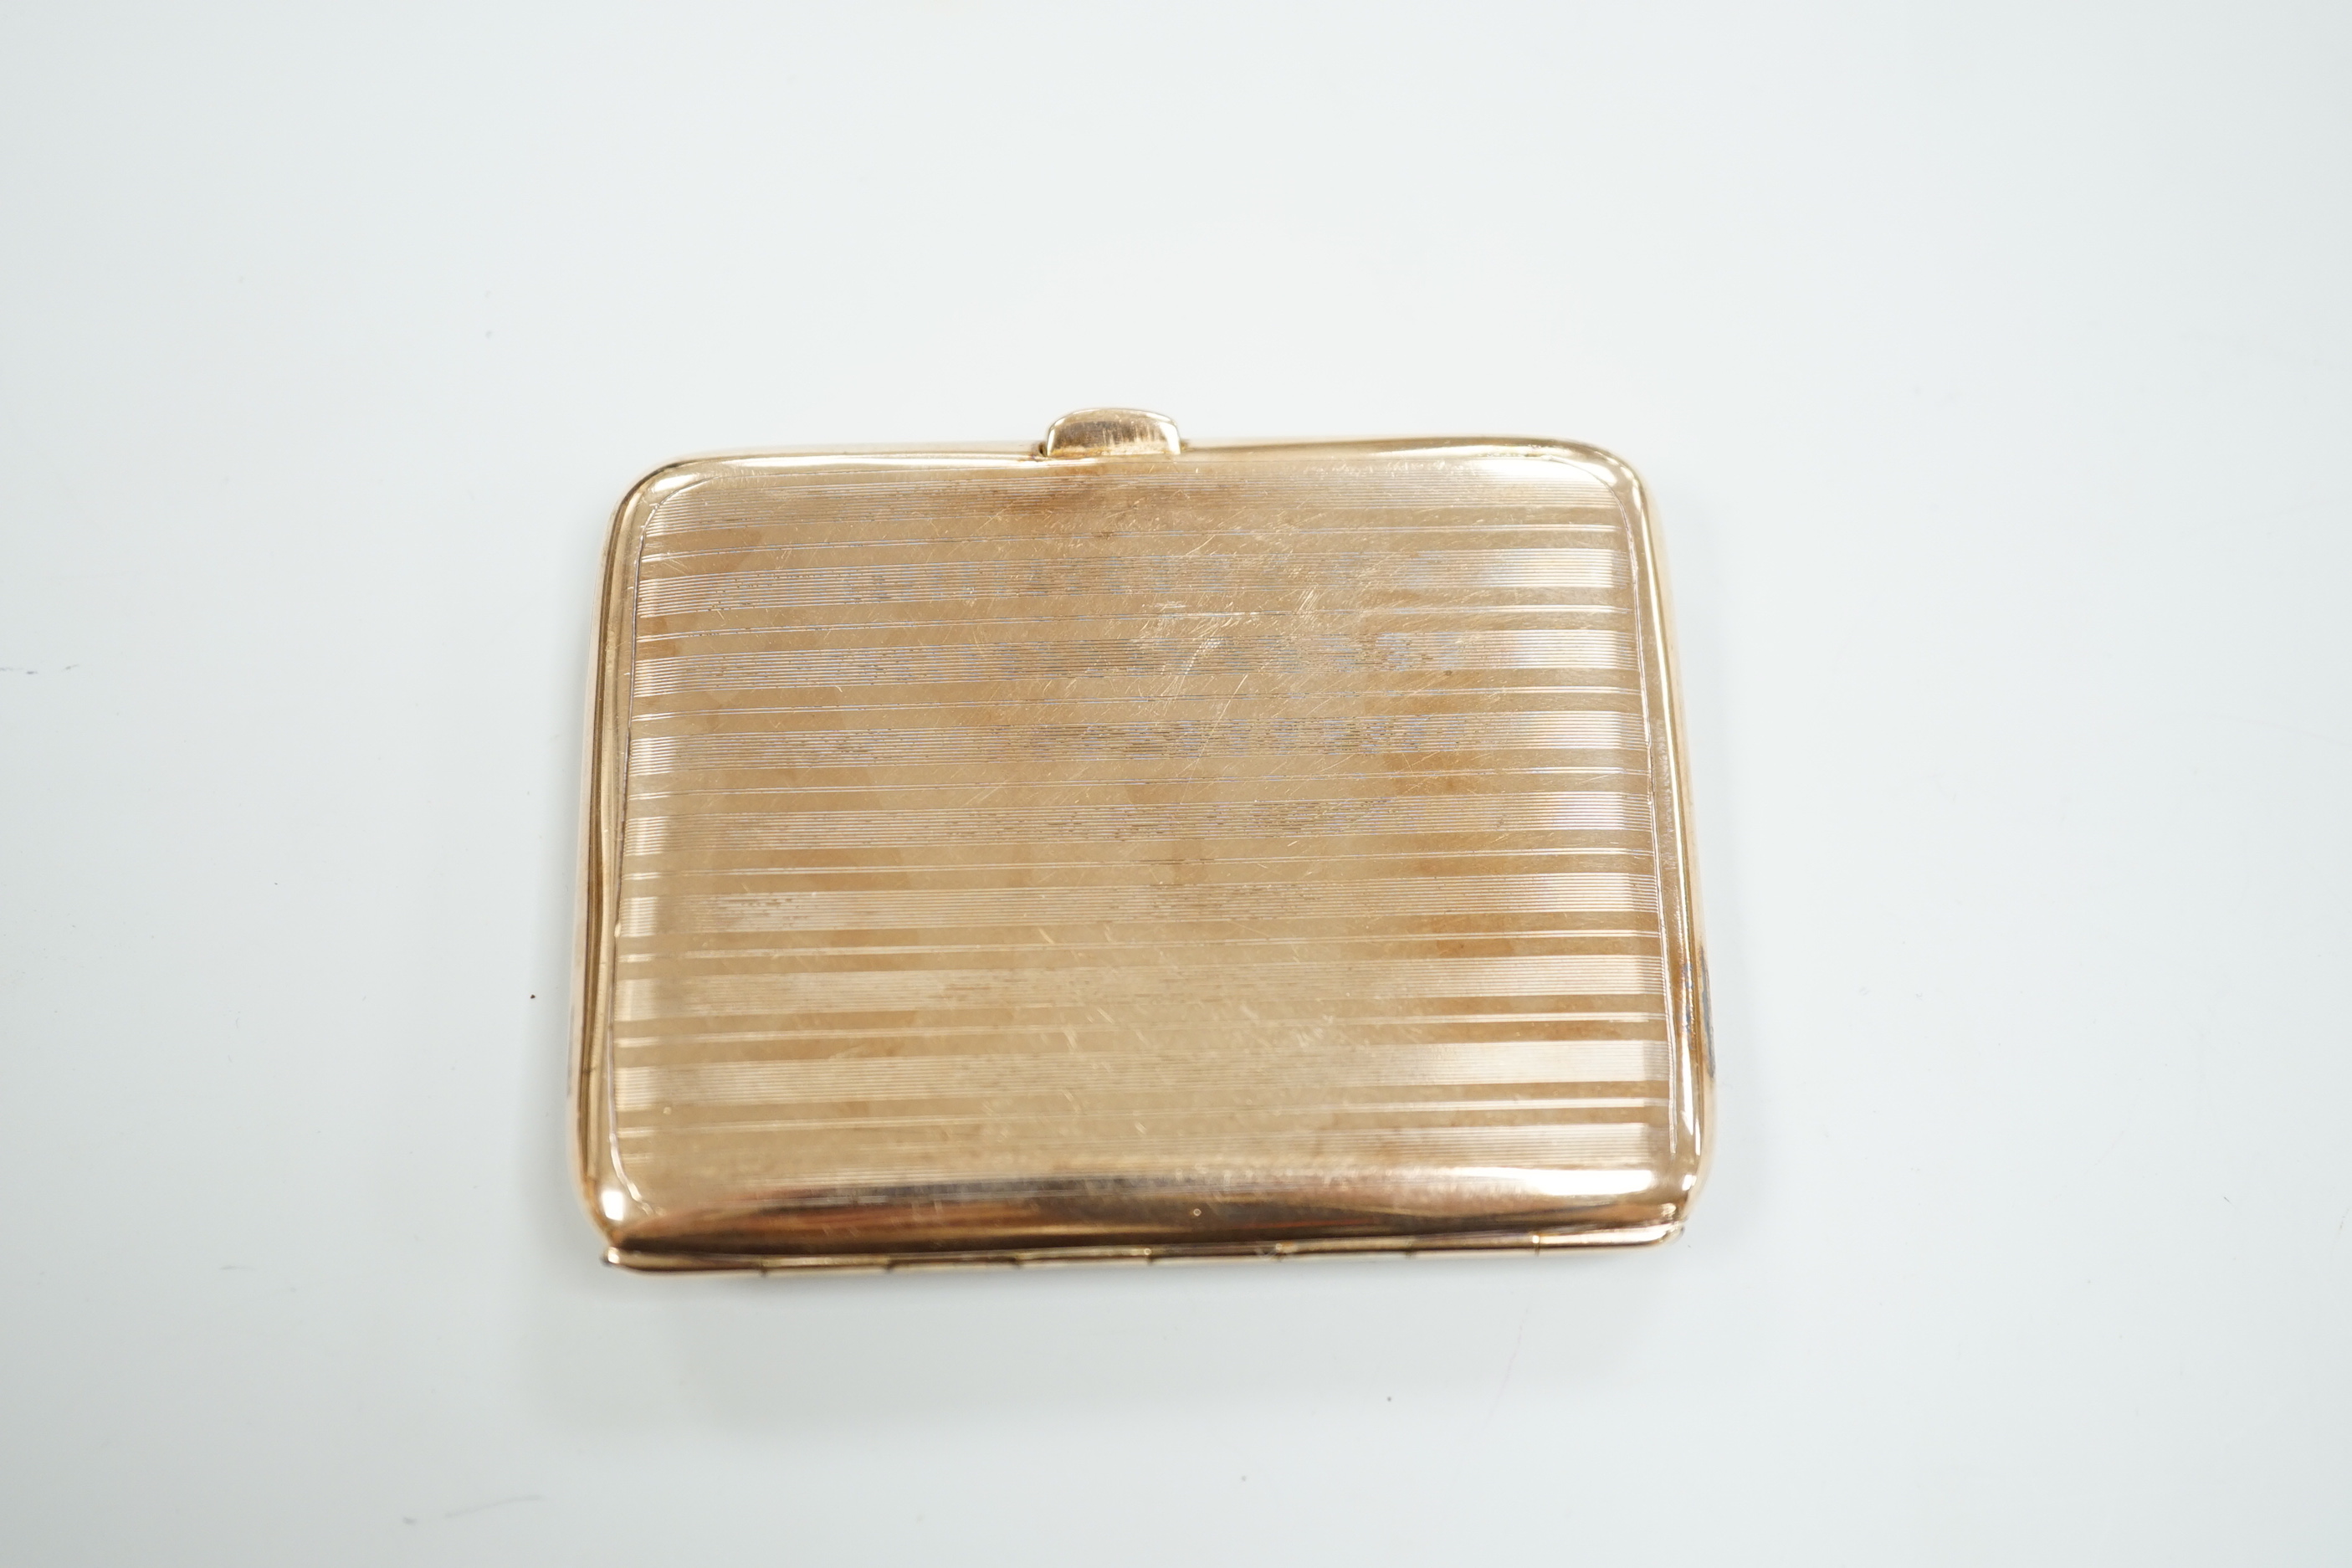 A George V 9ct gold cigarette case, 82mm